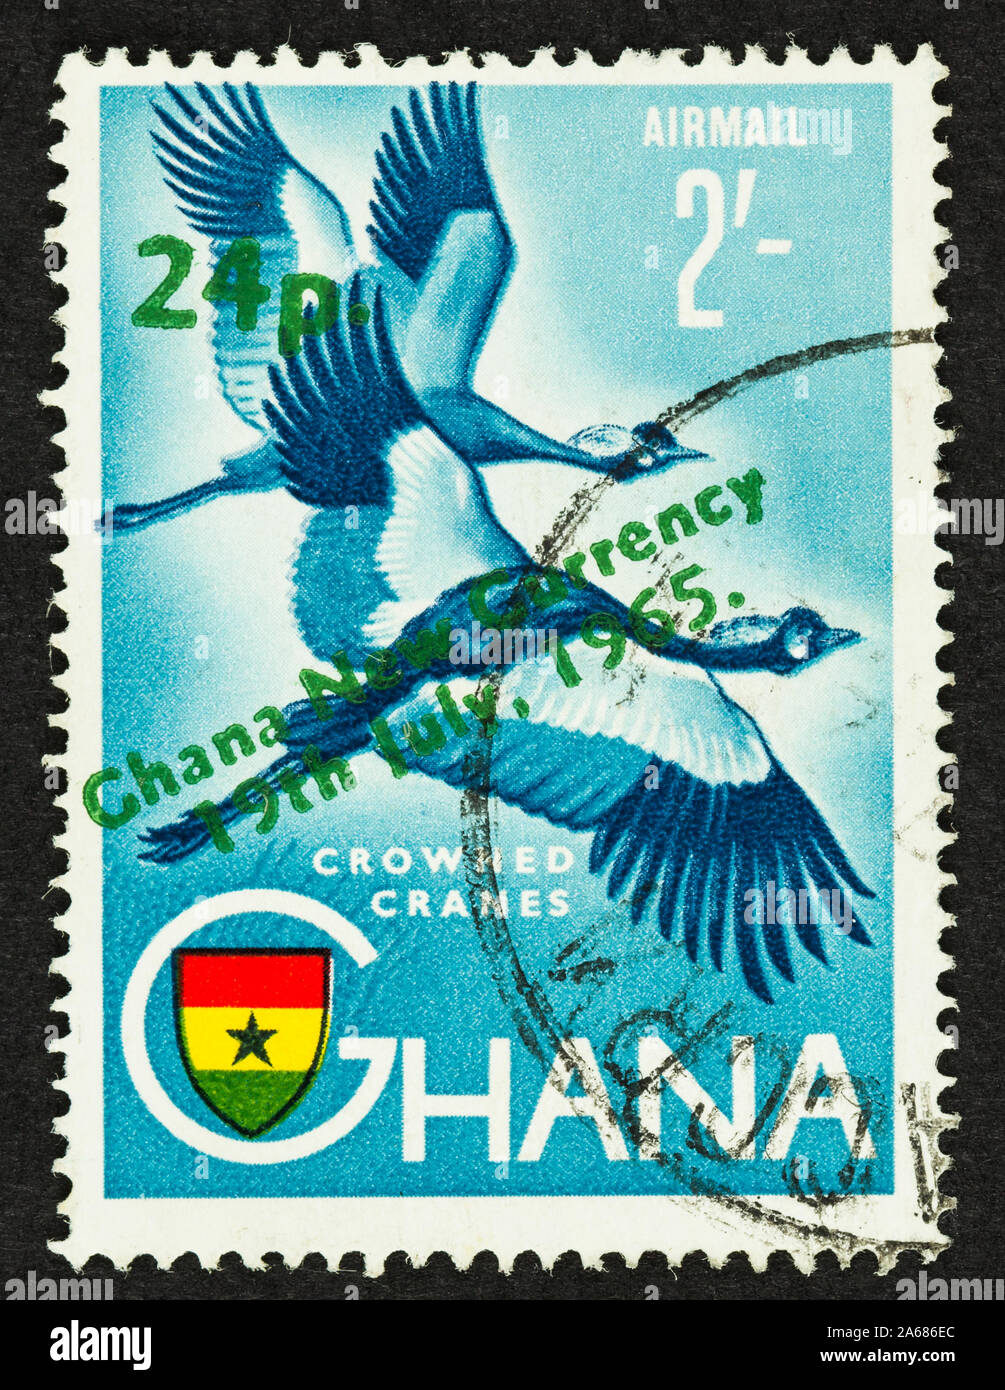 Sello de correo aéreo de Ghana con grullas coronadas en vuelo. Nueva sobreimpresión provisionals nueva moneda con Ghana el 19 de julio de 1965, 24p con tinta verde. Foto de stock